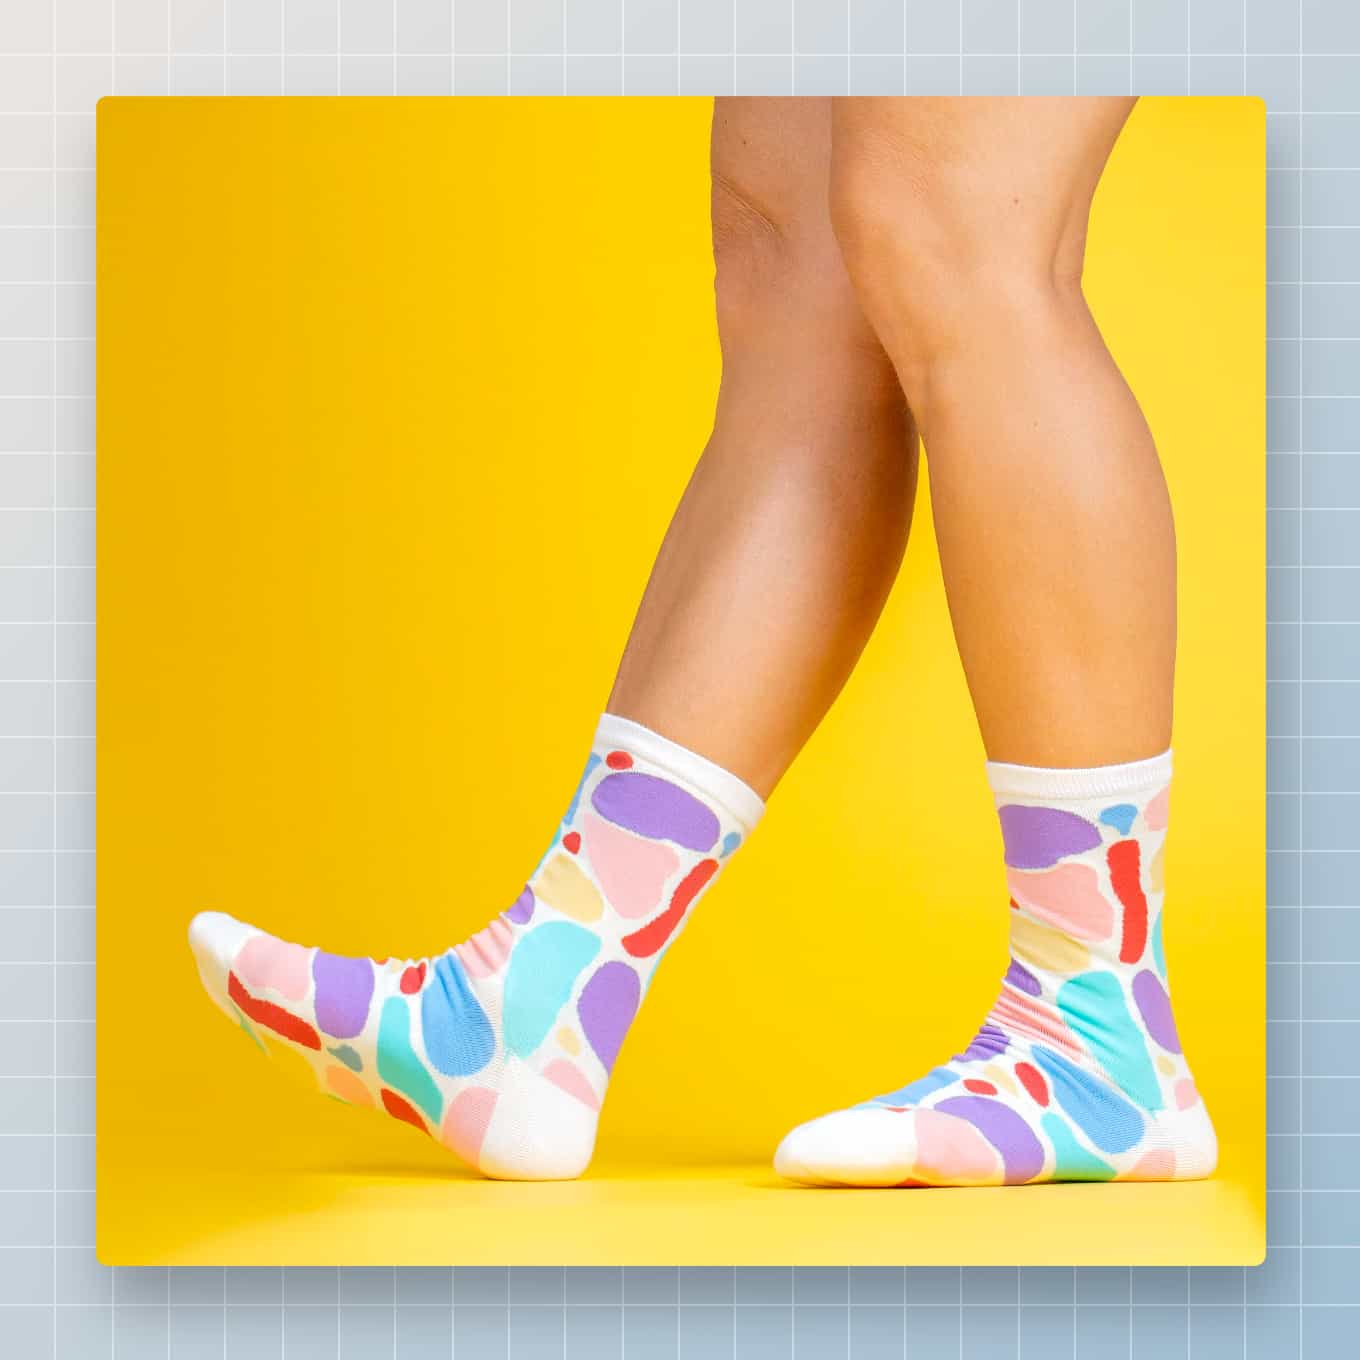 Een voetmodel dat Awesome Socks Club-sokken draagt voor een gedurfde gele achtergrond